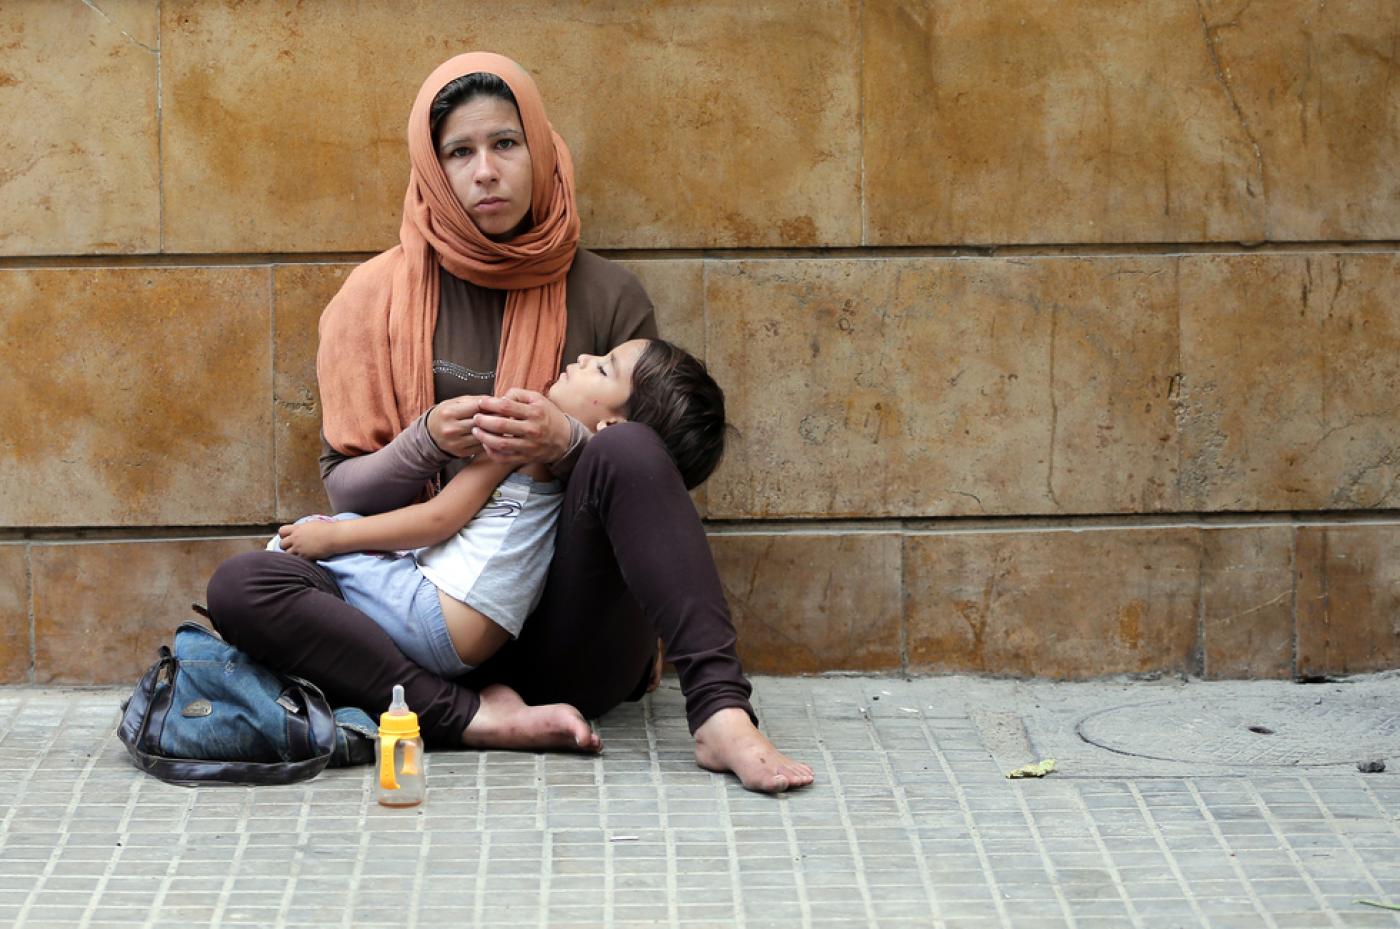 Une réfugiée syrienne mendie dans une rue de la capitale libanaise Beyrouth le 9 juillet 2015 (AFP)